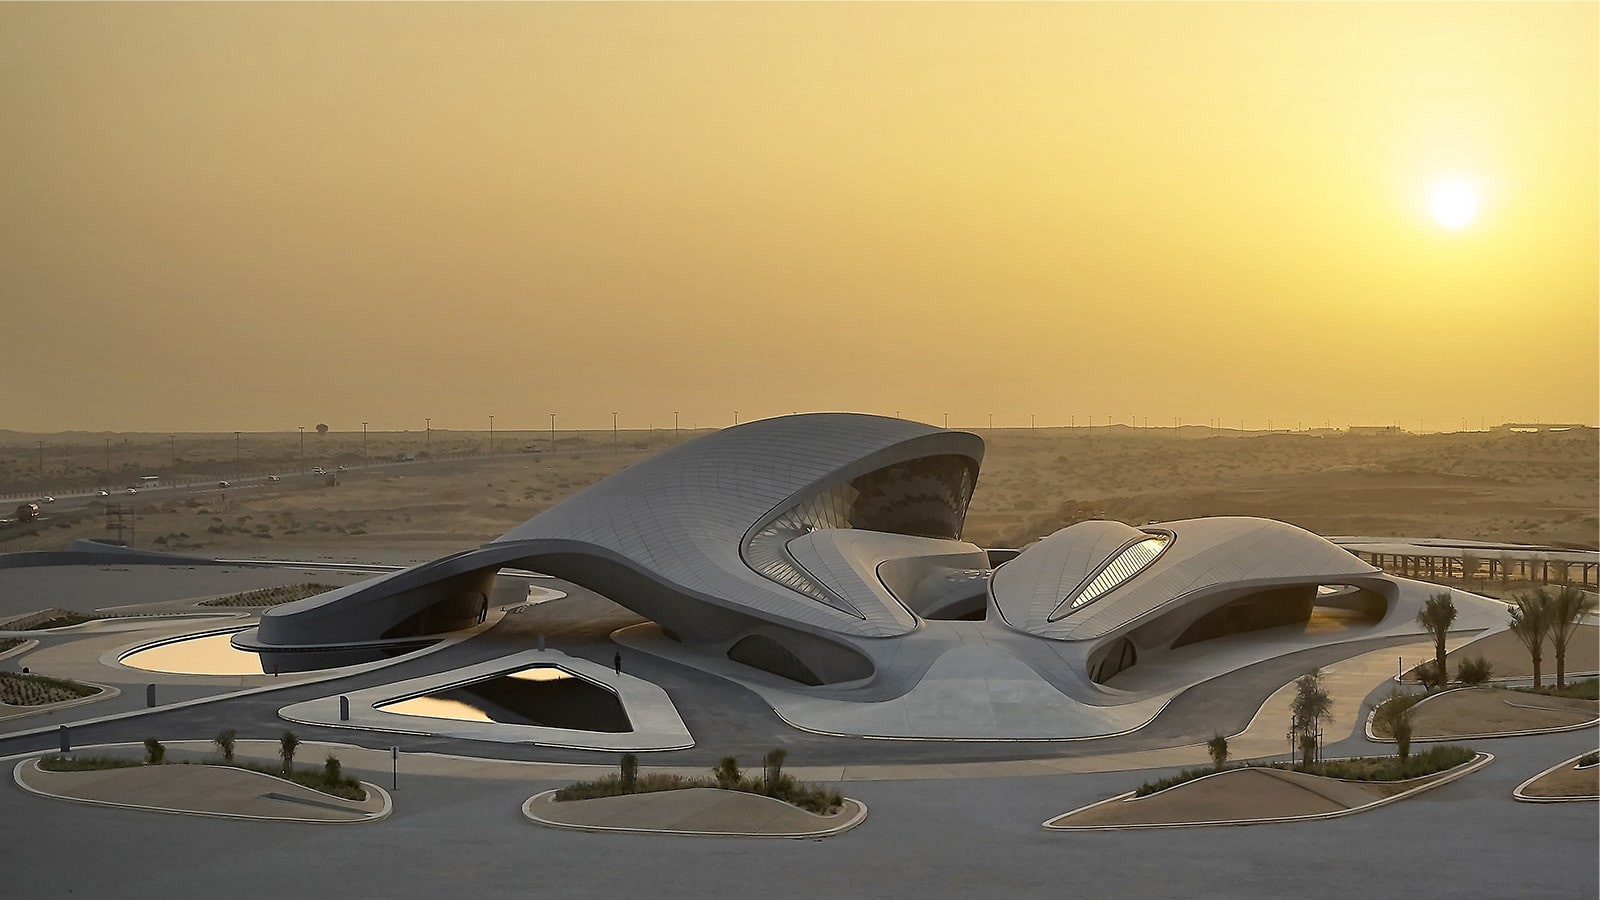 BEEAH Headquarters by Zaha Hadid Architects